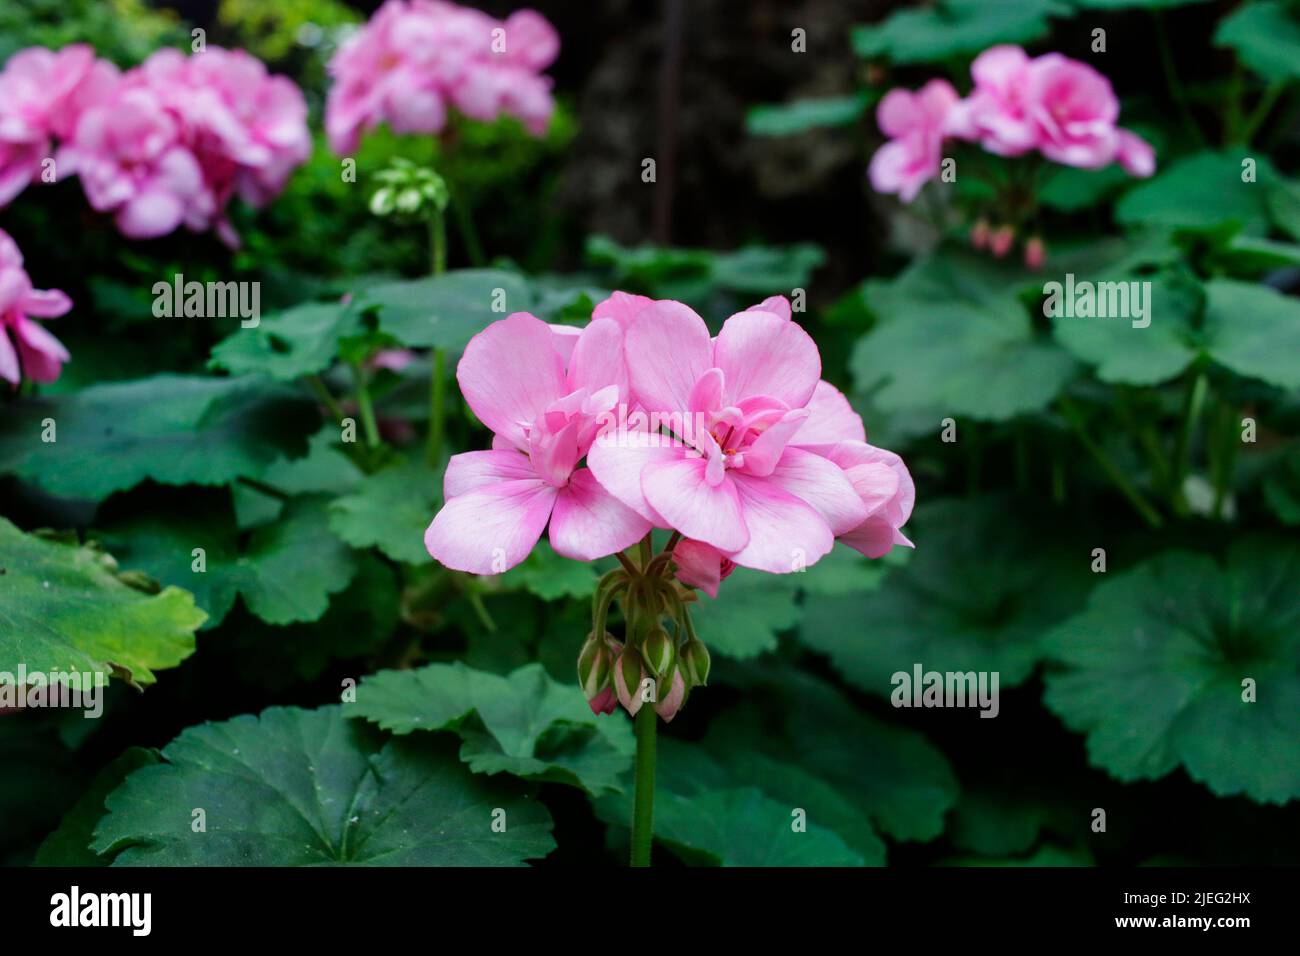 Pink Garden Geranium Flower Stock Photo